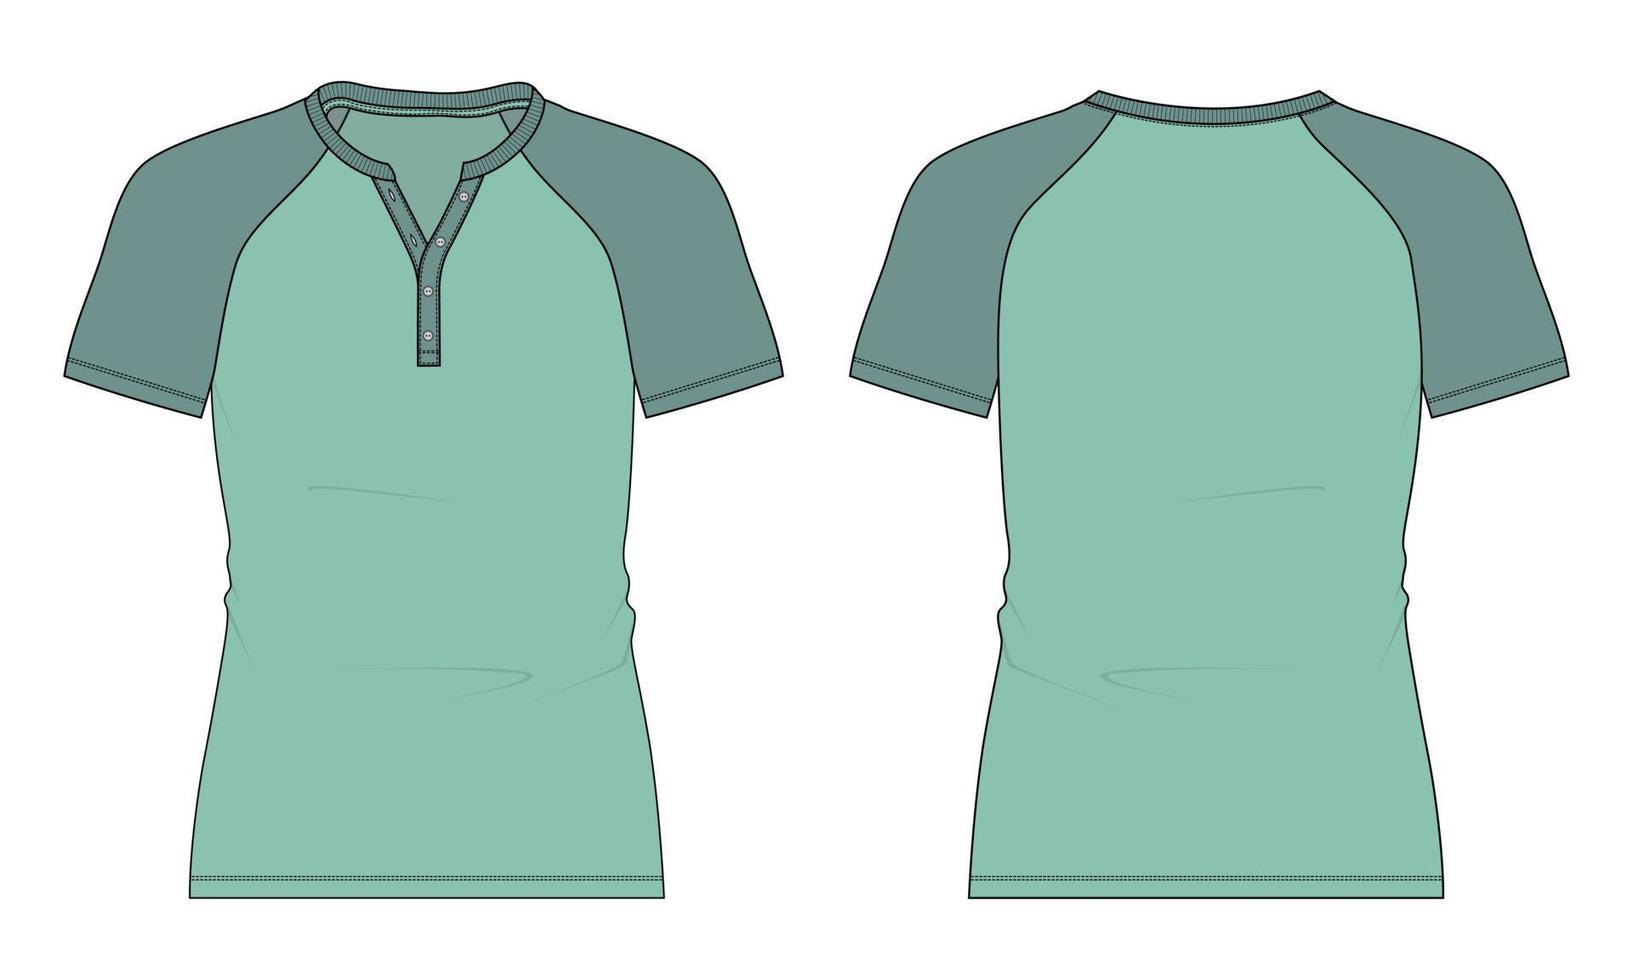 slim fit two tone groene kleur korte mouw raglan t-shirt vector illustratie sjabloon geïsoleerd op een witte achtergrond.